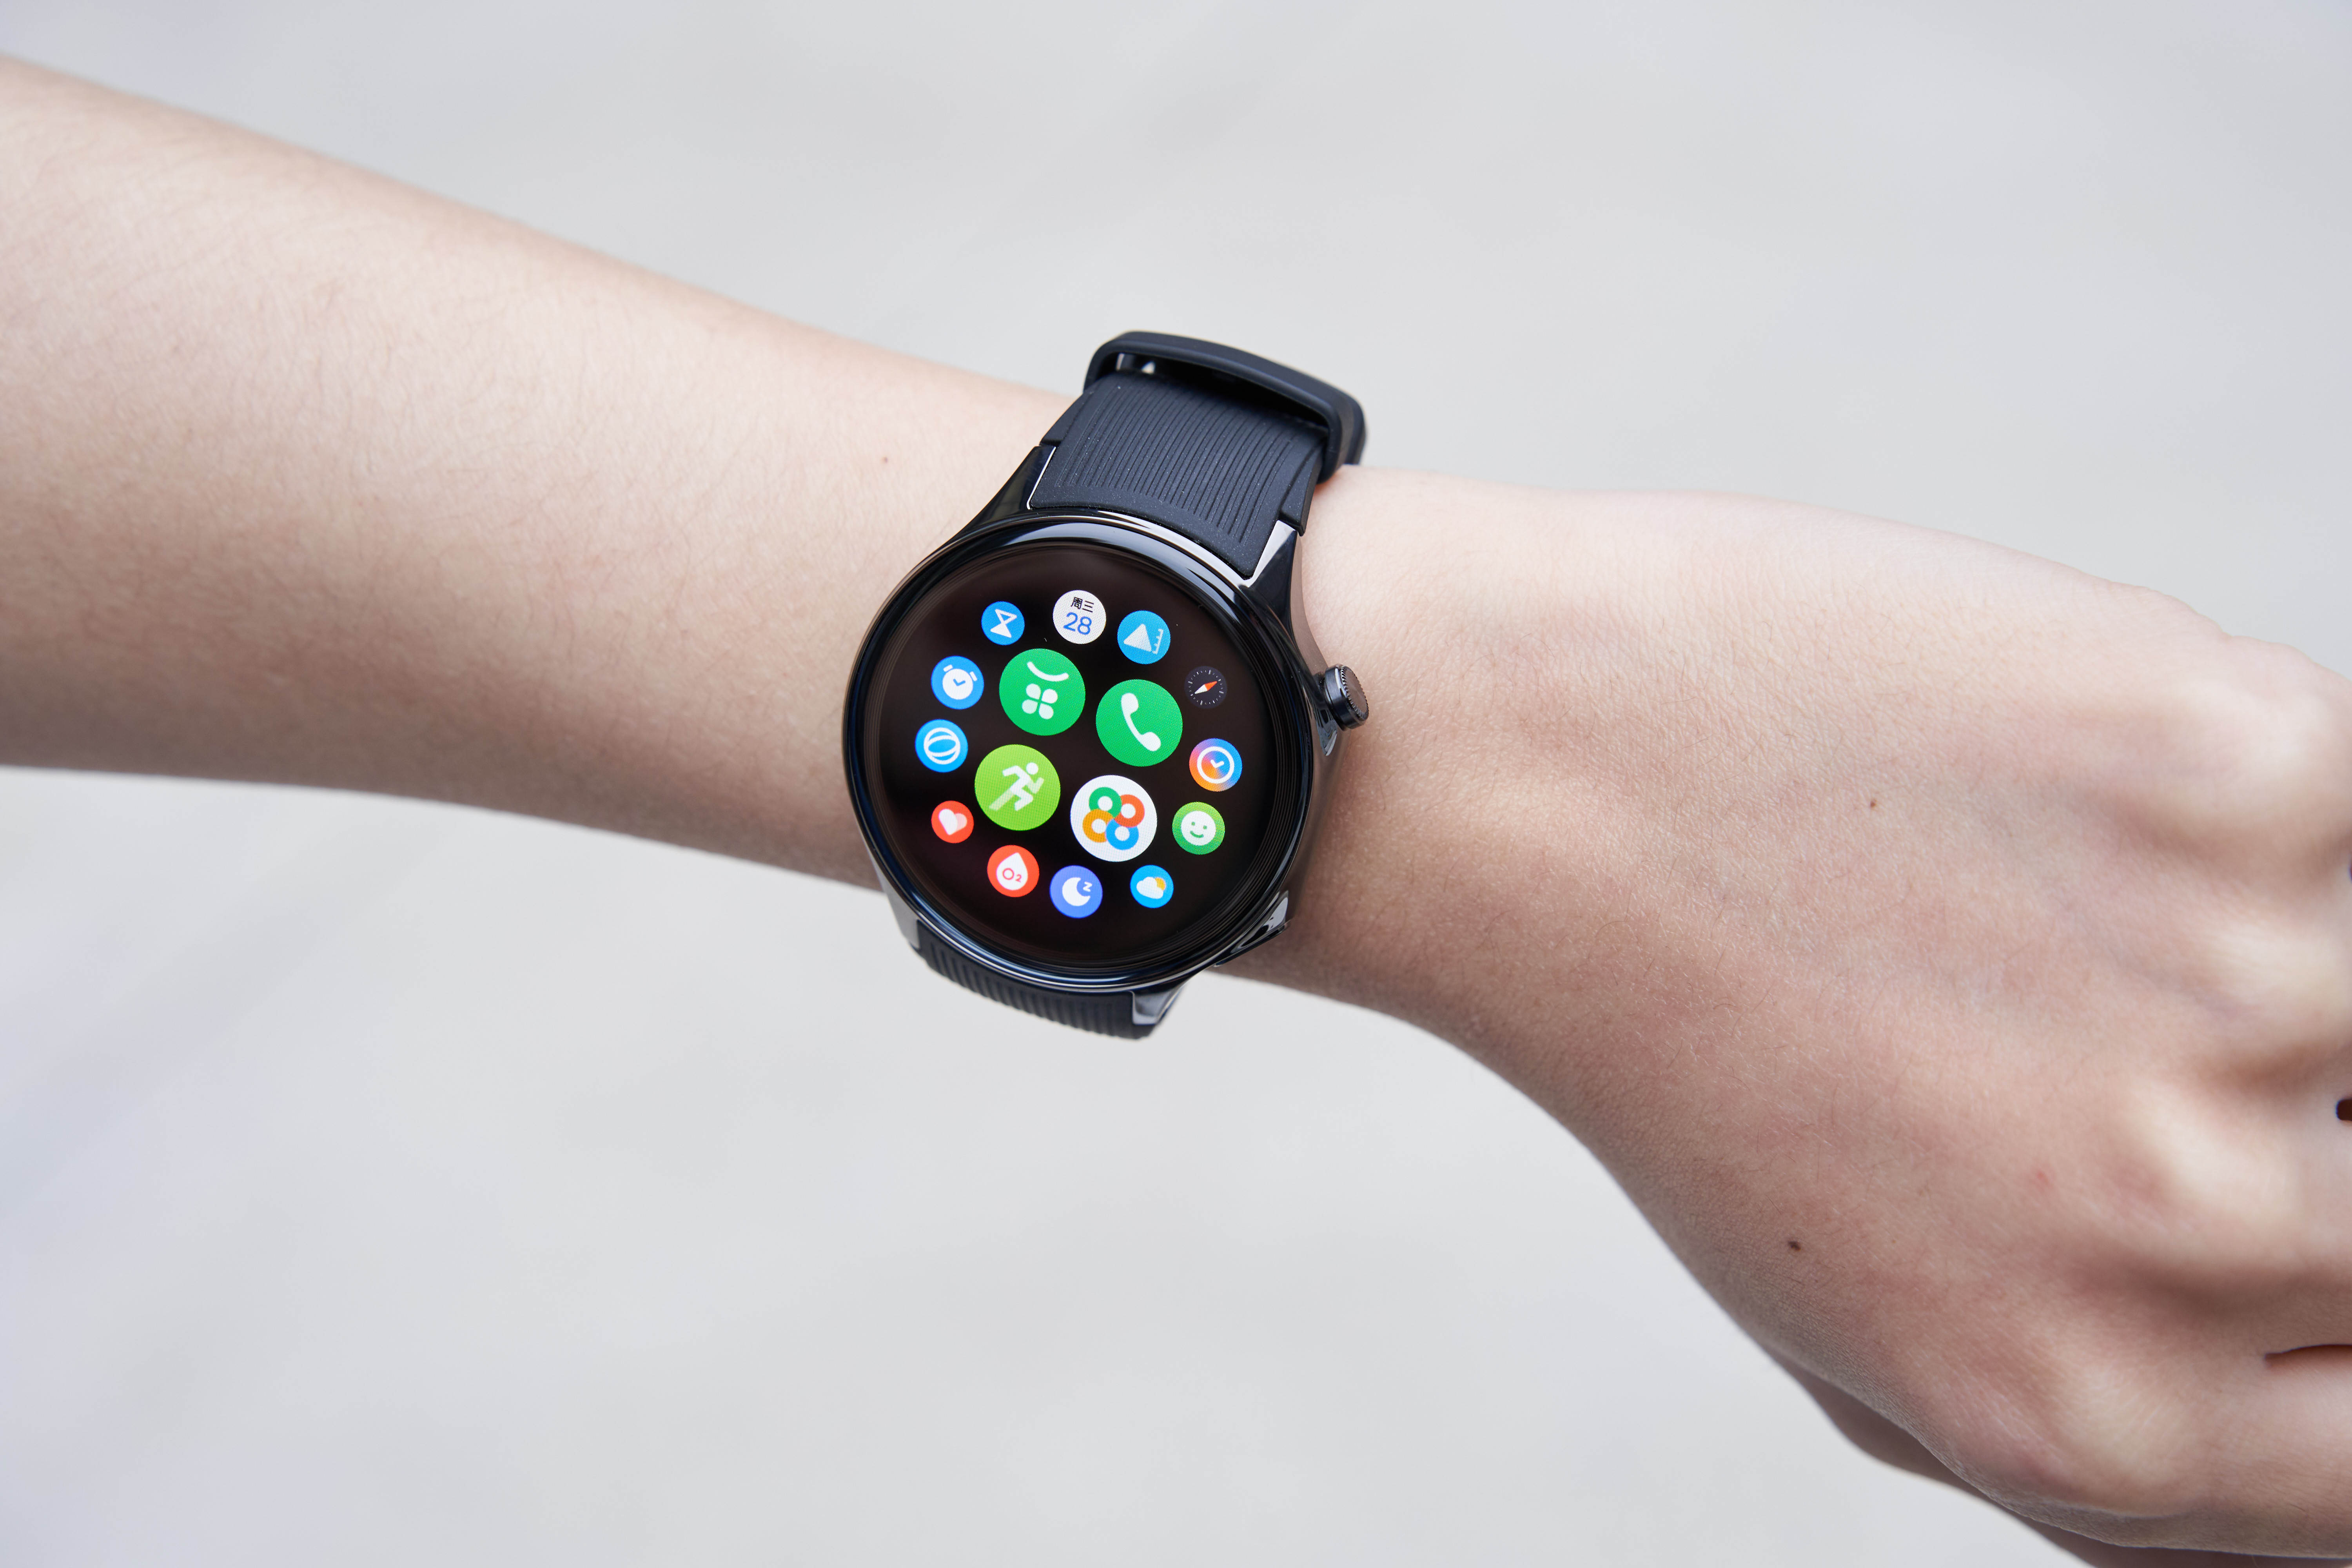 值得一提的是,这次oppo watch x在安卓手表里面还首发支持了微信手表